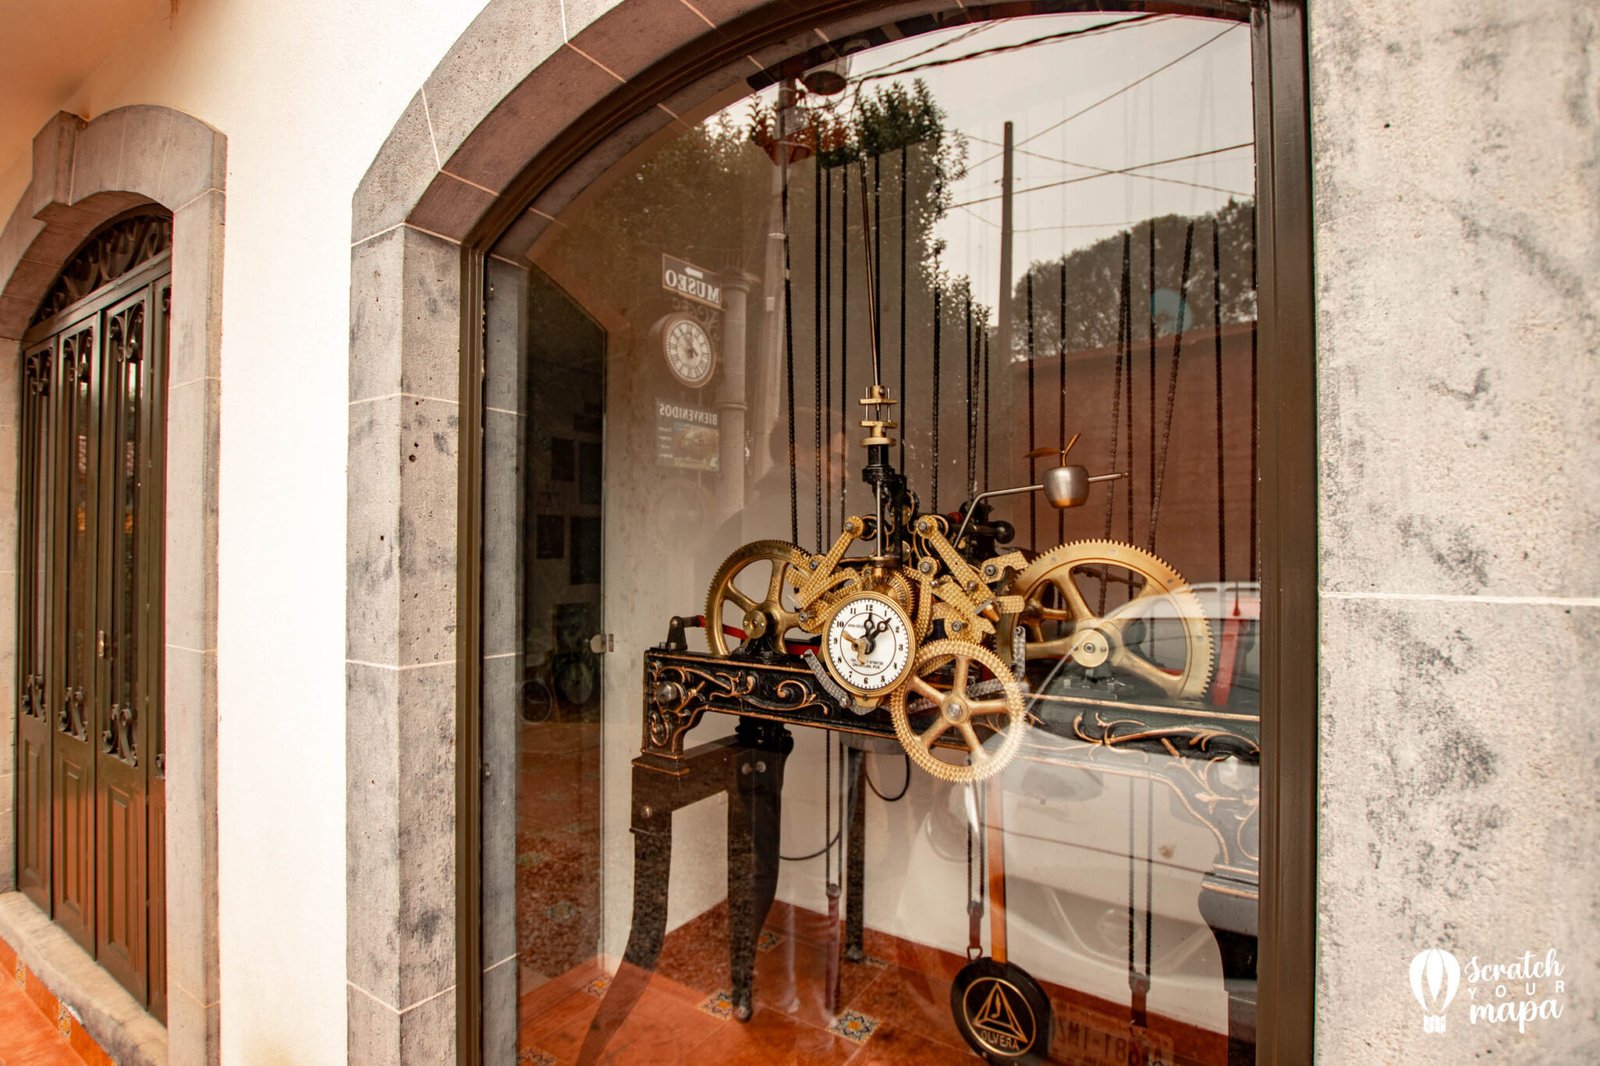 Clock factory, Zacatlan de las Manzanas